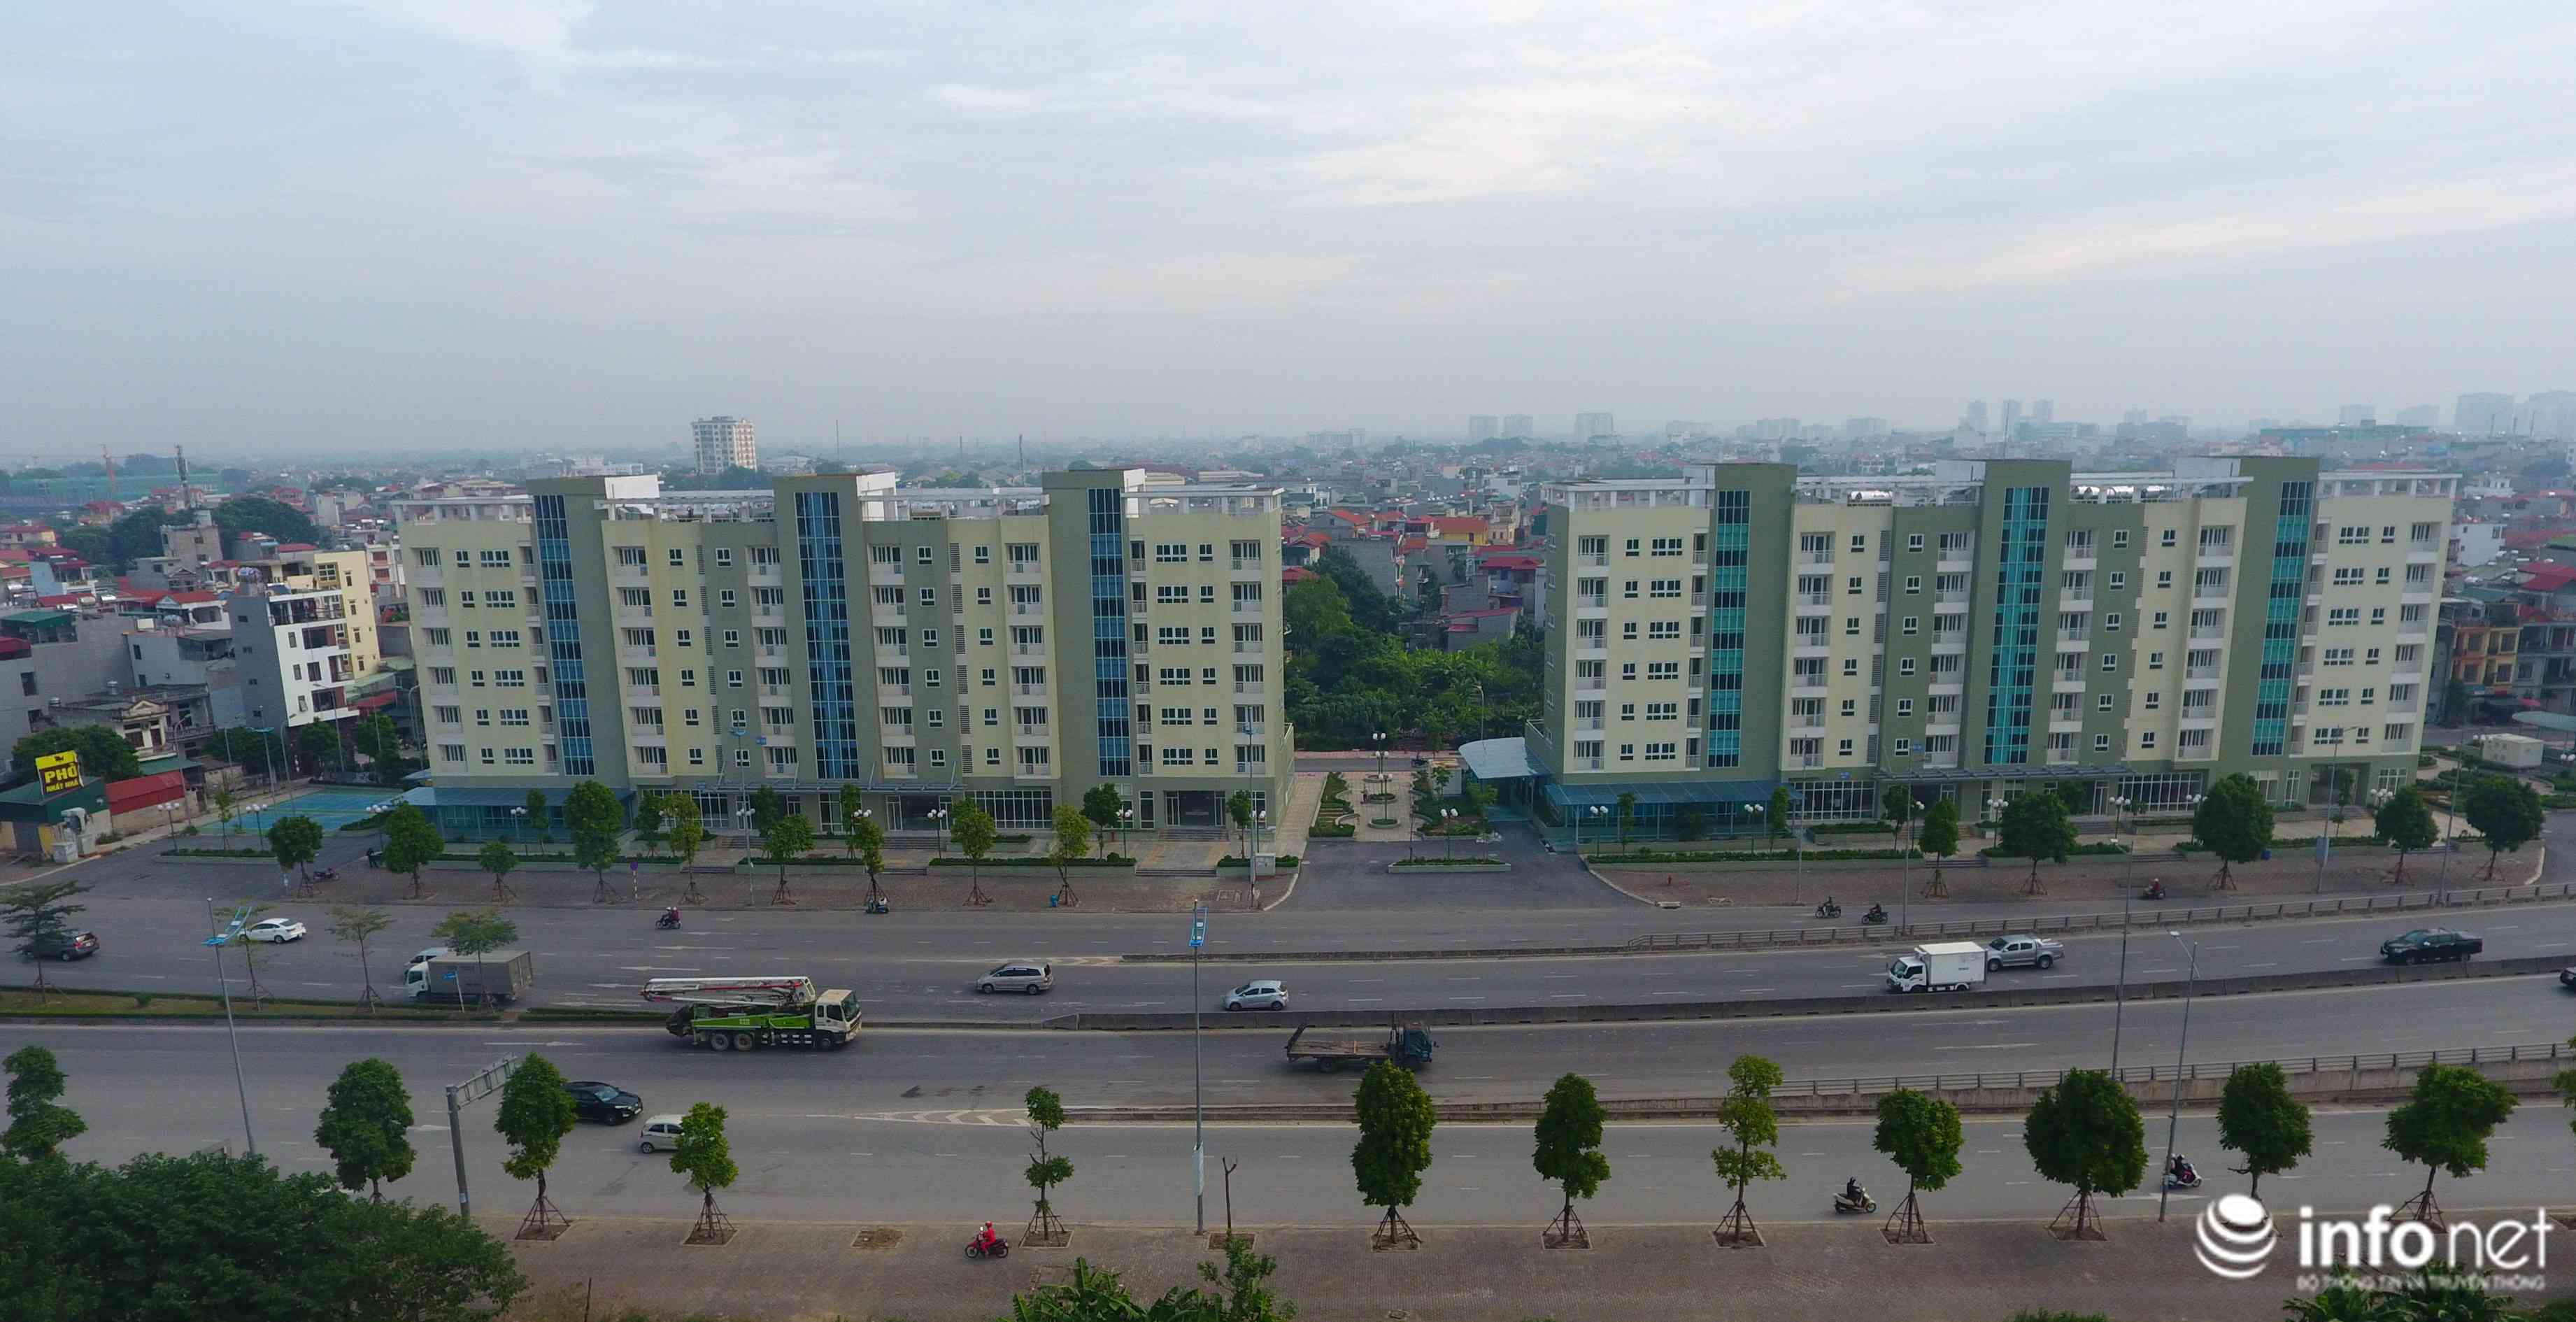 Theo UBND quận Hoàn Kiếm, đề án giãn dân phố cổ đề xuất những giải pháp làm giảm mật độ dân cư khu vực phố cổ từ 823 người/ha năm 2010 xuống còn 500 người/ha (mật độ khống chế theo quy hoạch đến năm 2020) đã được phê duyệt từ lâu.